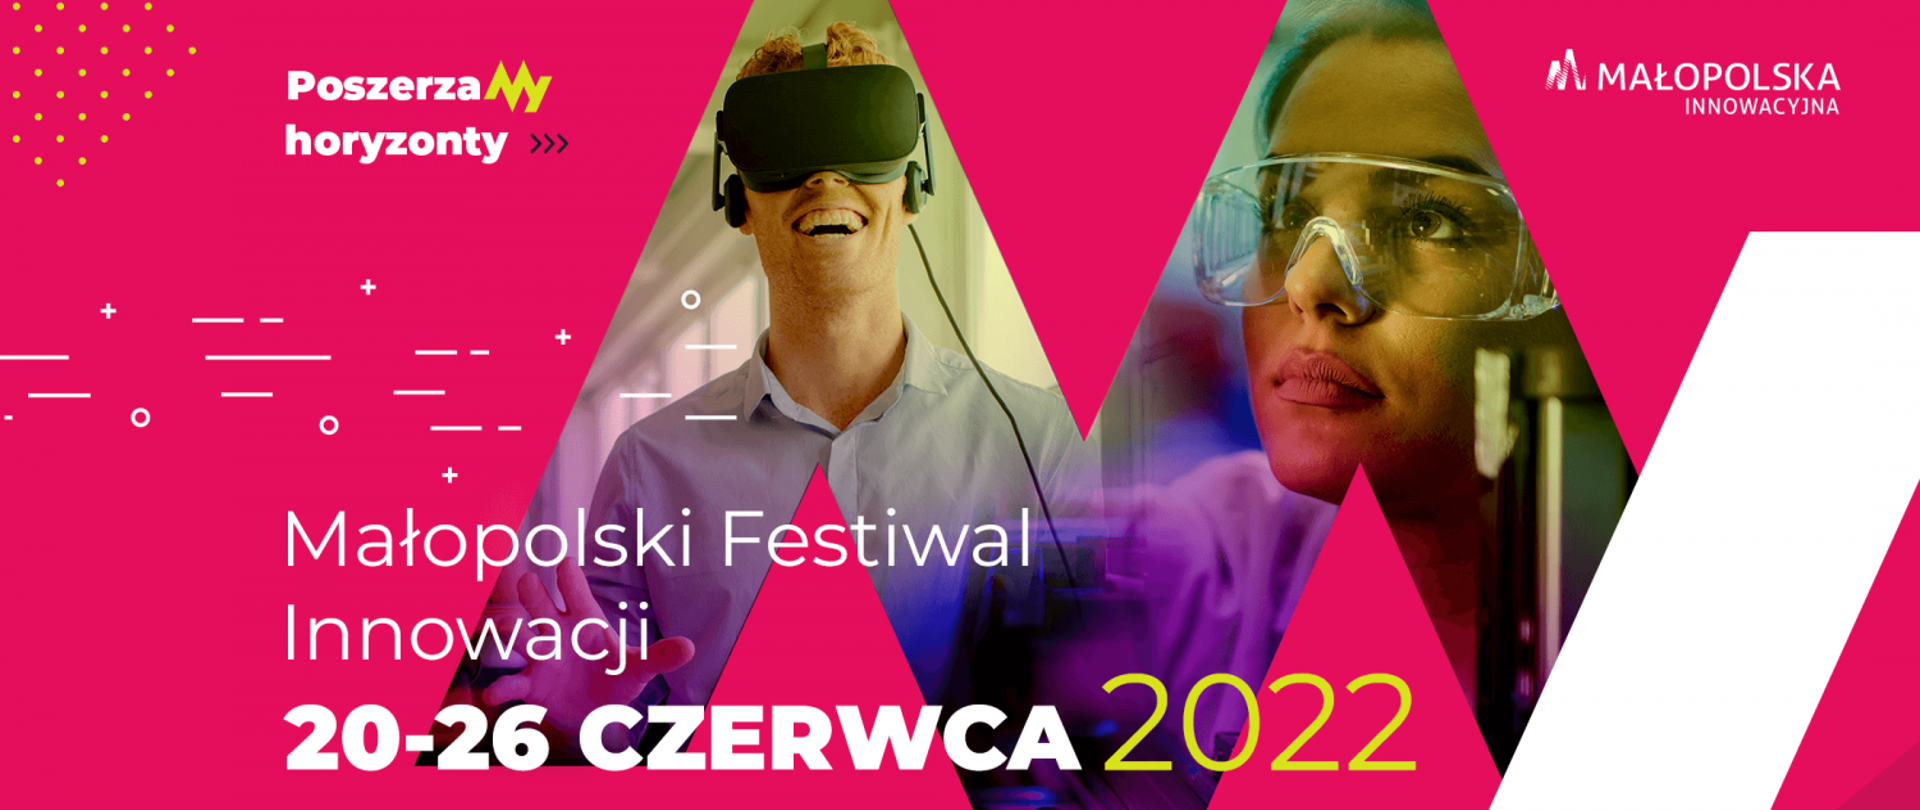 Plakat informacyjny dotyczący 12 edycji małopolskiego Festiwalu Innowacji